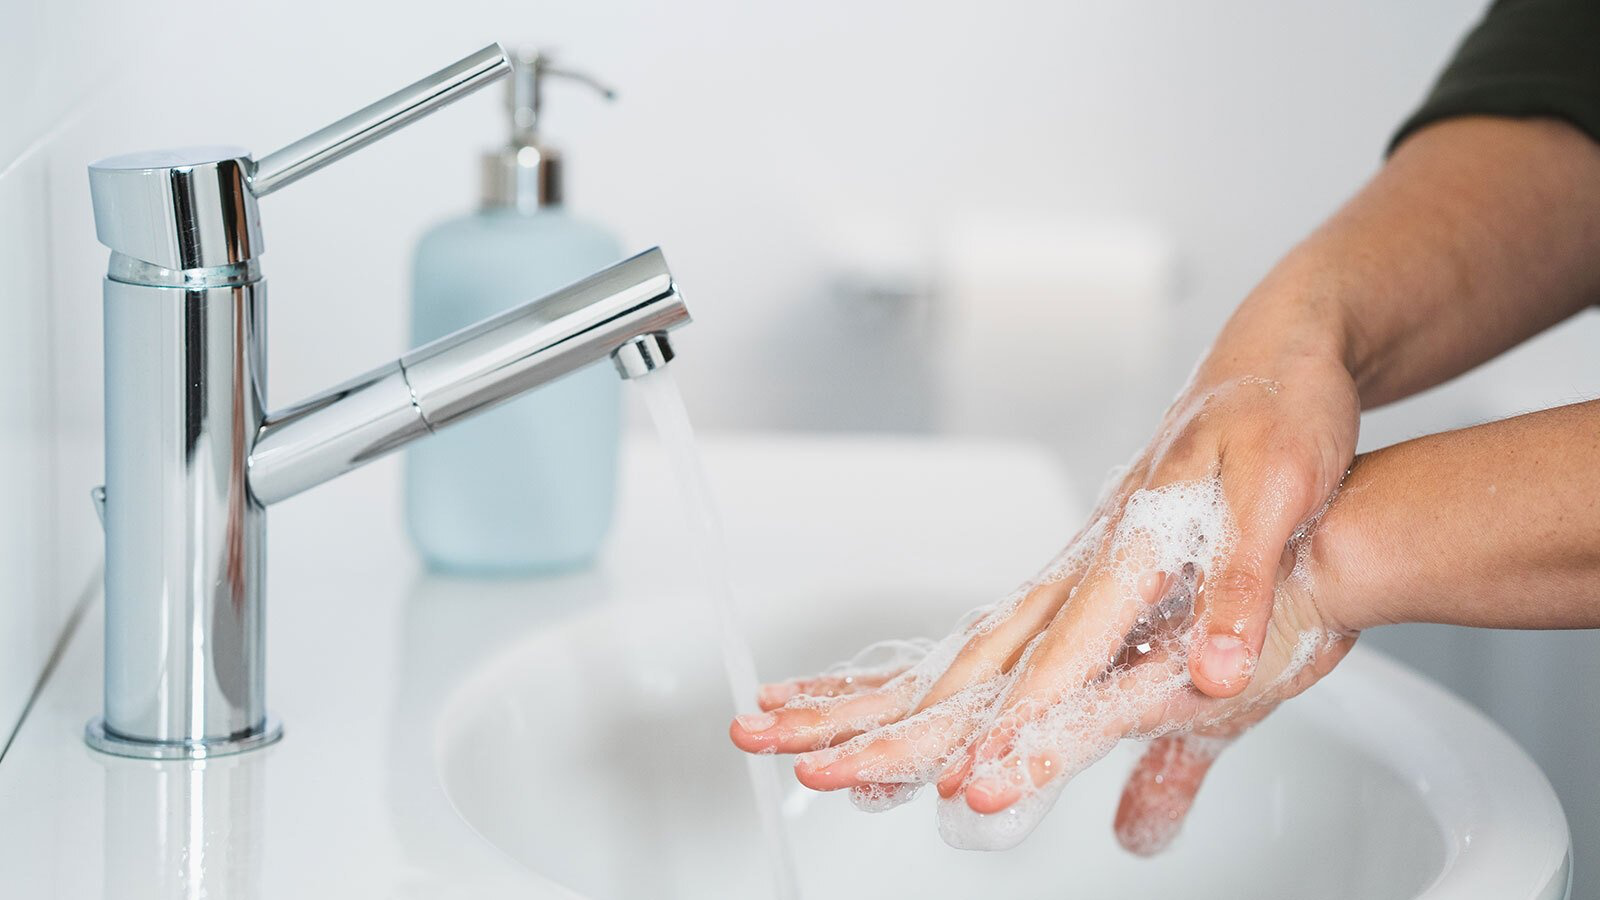 Dùng các loại chất tẩy rửa mạnh: Nhiều người lựa chọn xà phòng dạng bánh để rửa tay sau khi nấu ăn hoặc đi vệ sinh. Tuy nhiên, những sản phẩm này thường có độ tẩy rửa rất mạnh, khiến da tay bị khô và mất đi sự mềm mại tự nhiên. Xà phòng có tính kiềm cao có thể làm mất lớp dầu bảo vệ tự nhiên của da, dẫn đến tình trạng da tay dễ bị khô căng và kích ứng. Đặc biệt, việc sử dụng thường xuyên các loại xà phòng này có thể làm giảm độ ẩm của da, gây ra các vấn đề như viêm da tiếp xúc và lão hóa sớm.